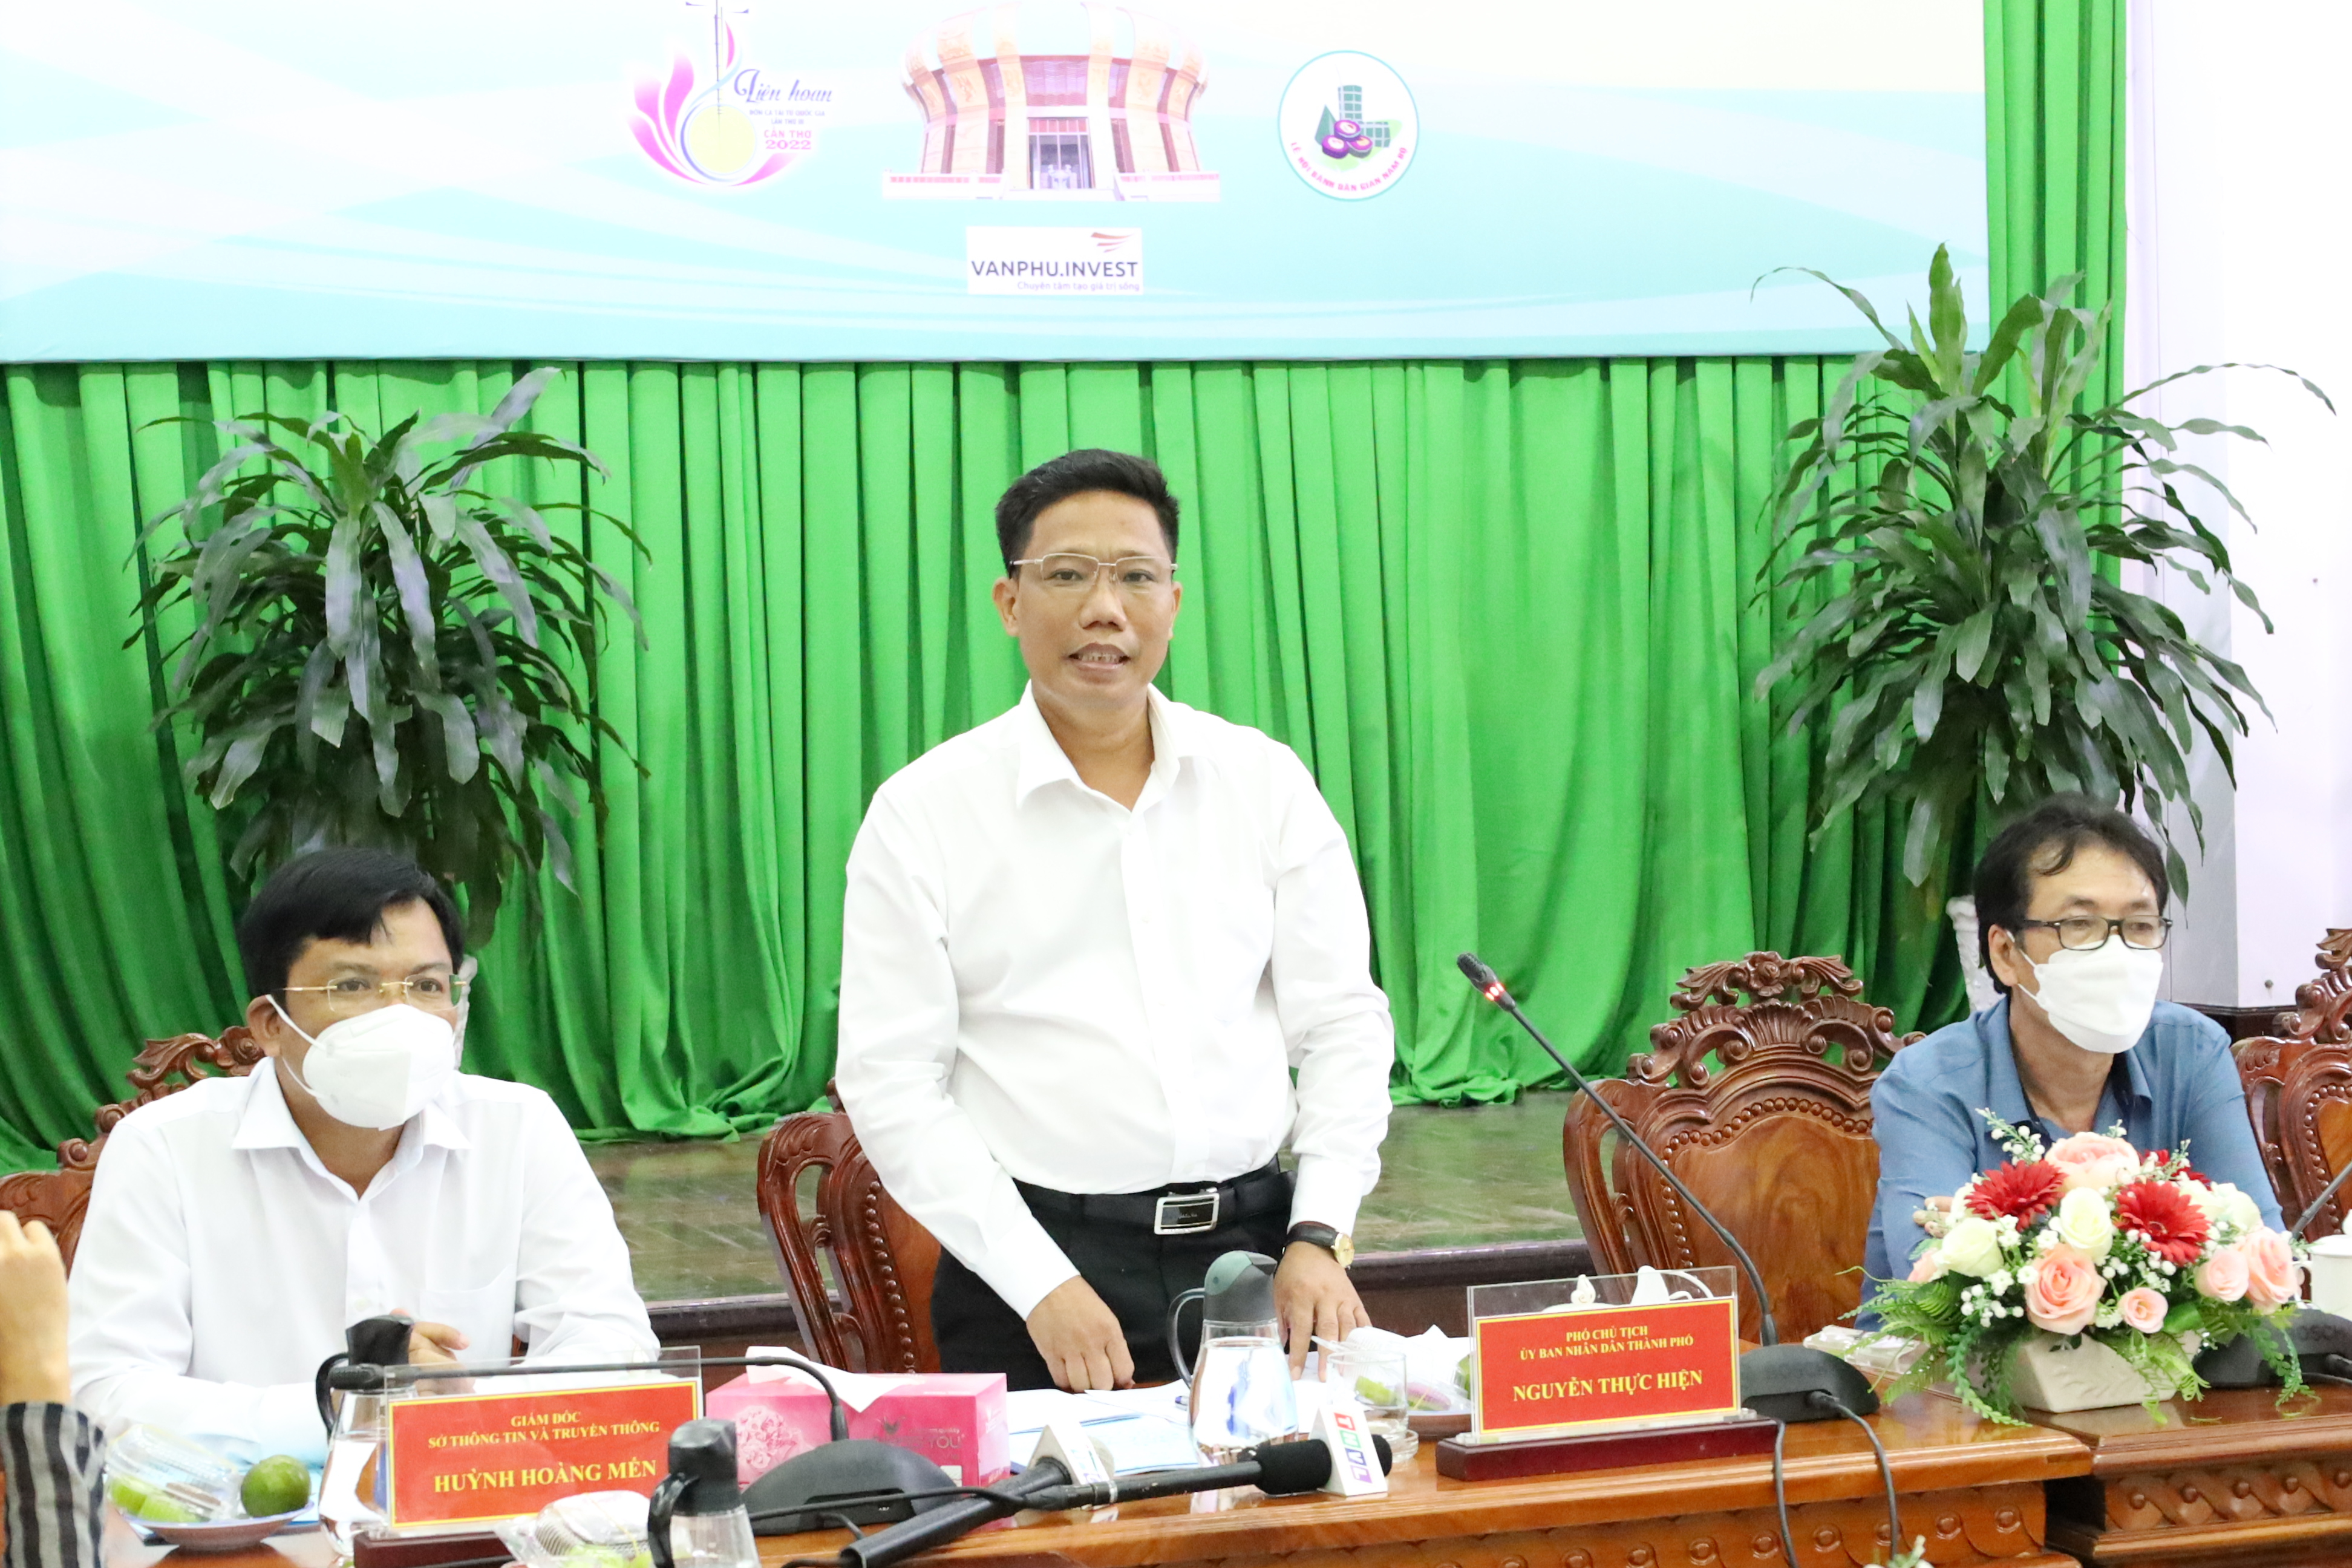 Ông Nguyễn Thực Hiện - Phó Chủ tịch UBND TP. Cần Thơ phát biểu tại buổi họp báo.